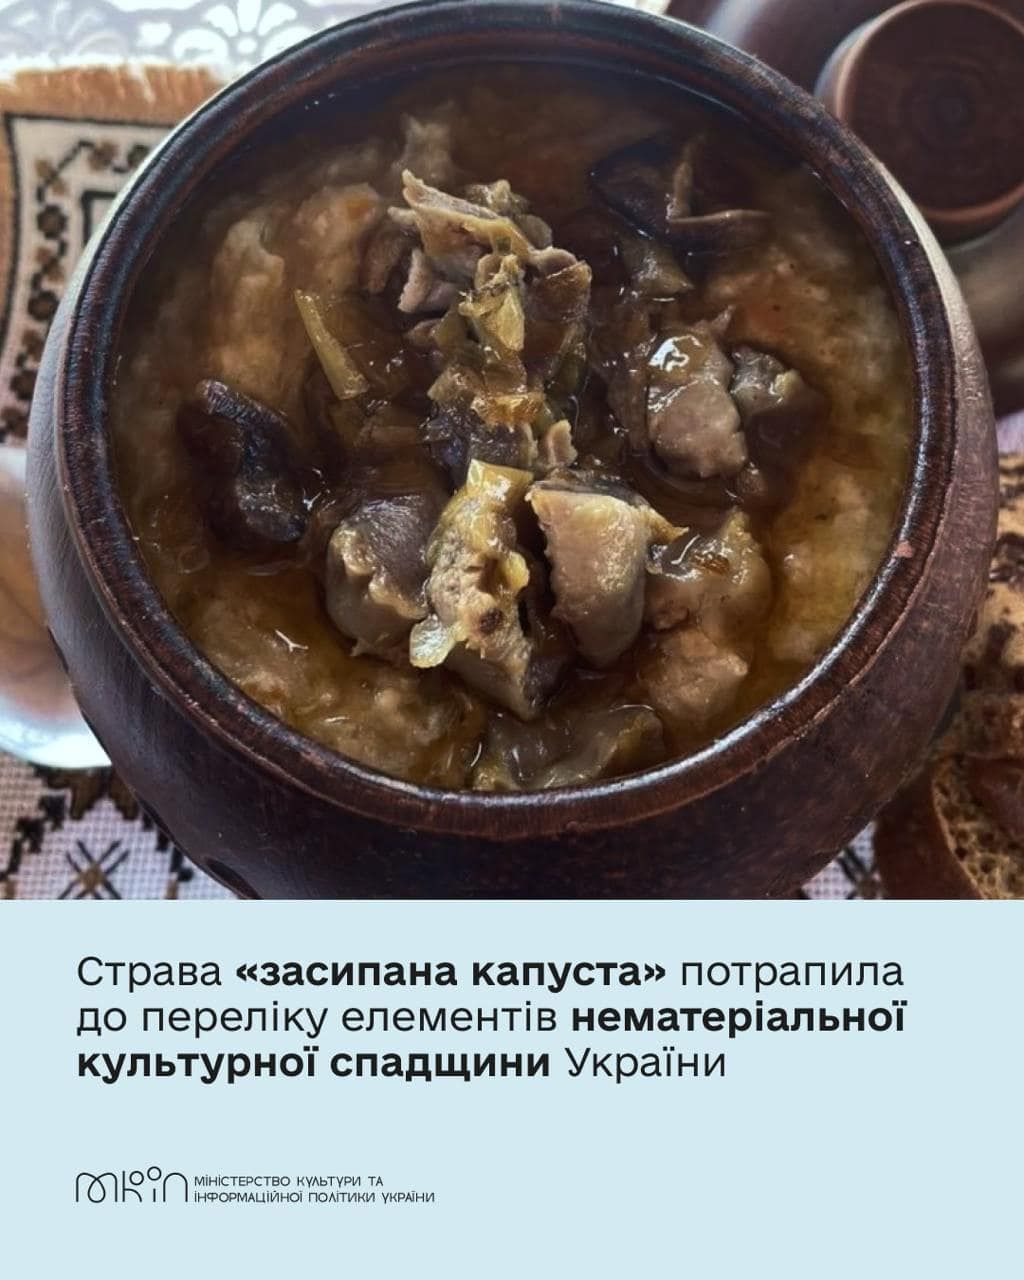 «Засипана капуста» визнана нематеріальною культурною спадщиною України